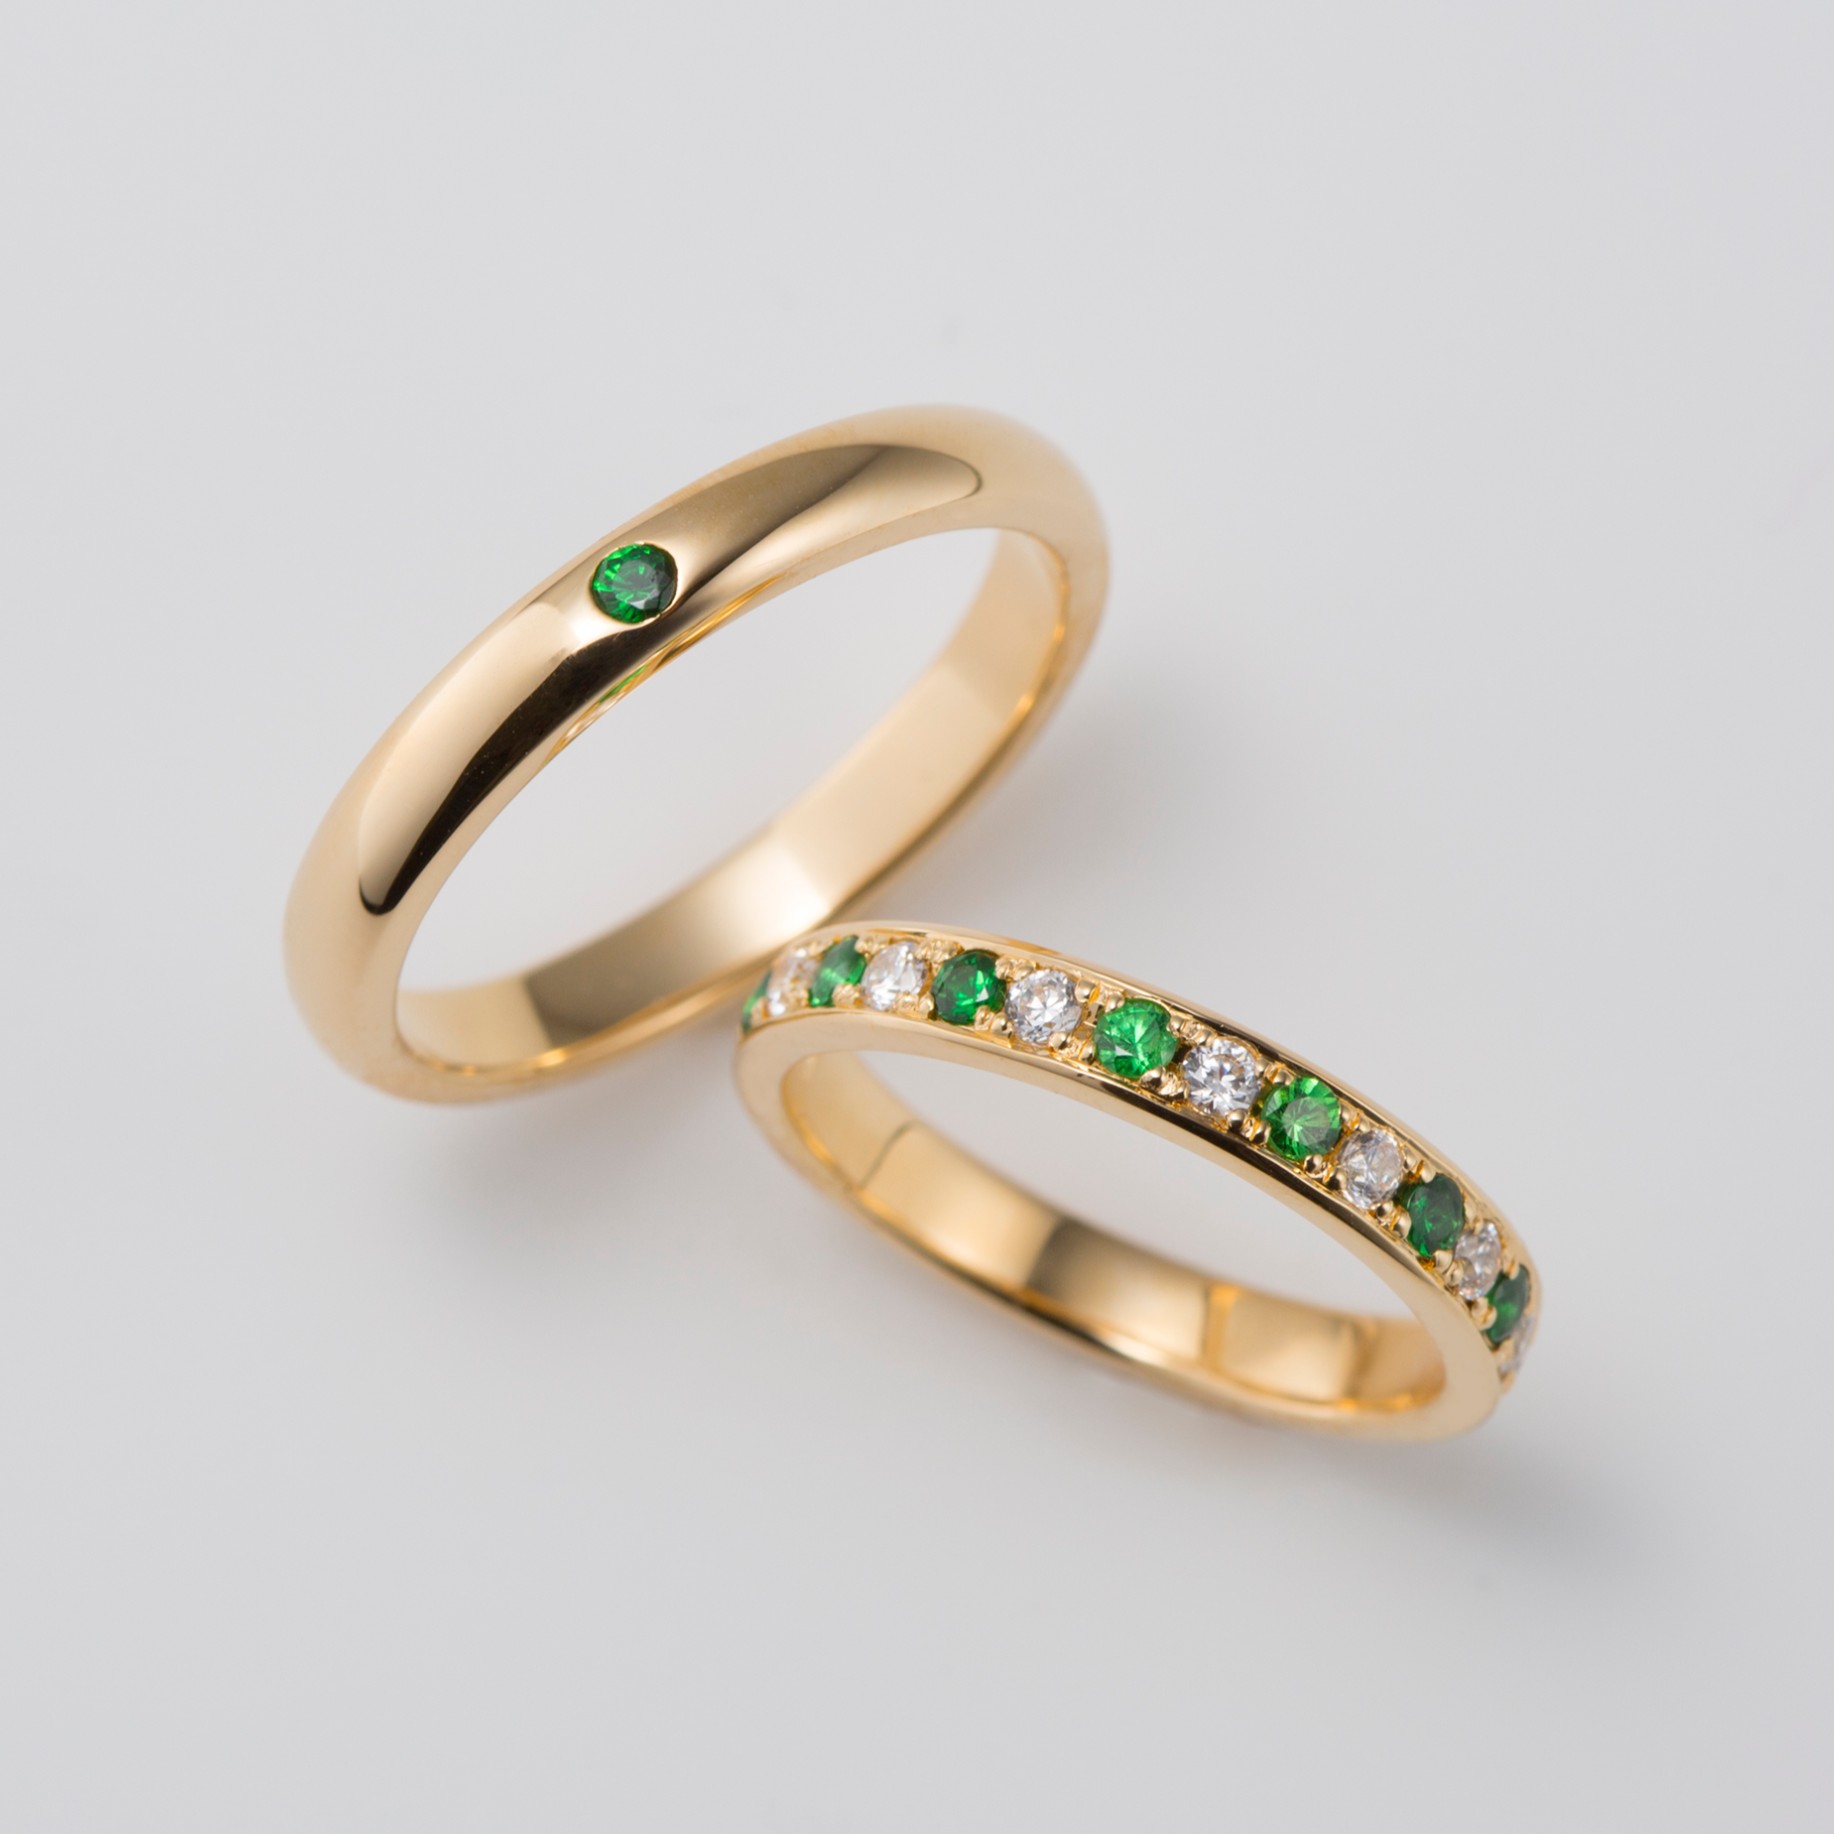 ガーネットをあしらったエタニティデザインの結婚指輪